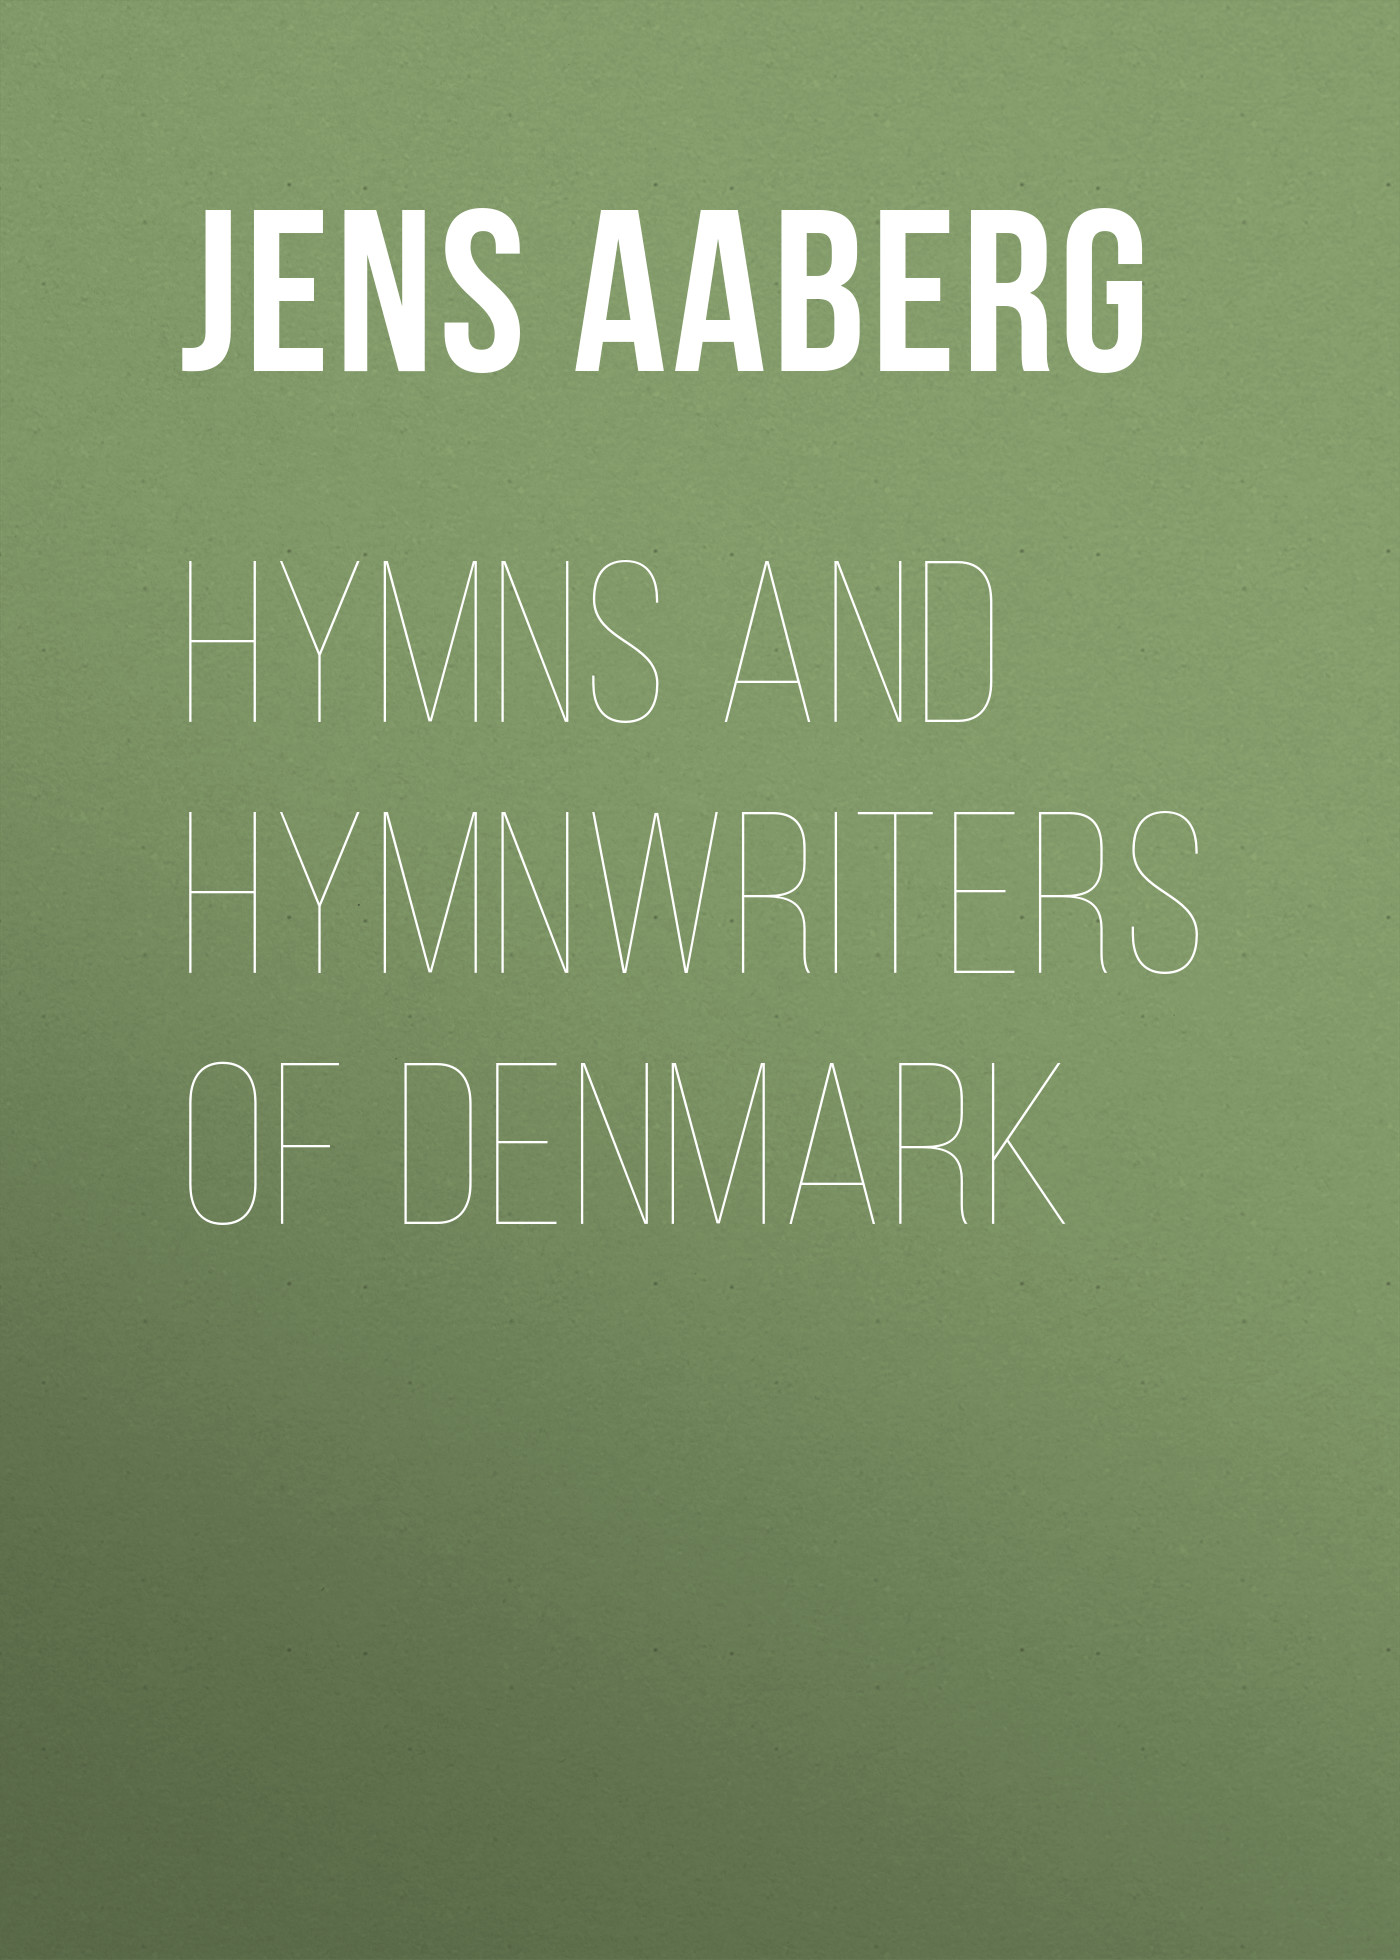 Книга Hymns and Hymnwriters of Denmark из серии , созданная Jens Aaberg, может относится к жанру Зарубежная старинная литература, Зарубежная классика, Историческая литература. Стоимость электронной книги Hymns and Hymnwriters of Denmark с идентификатором 24174740 составляет 5.99 руб.